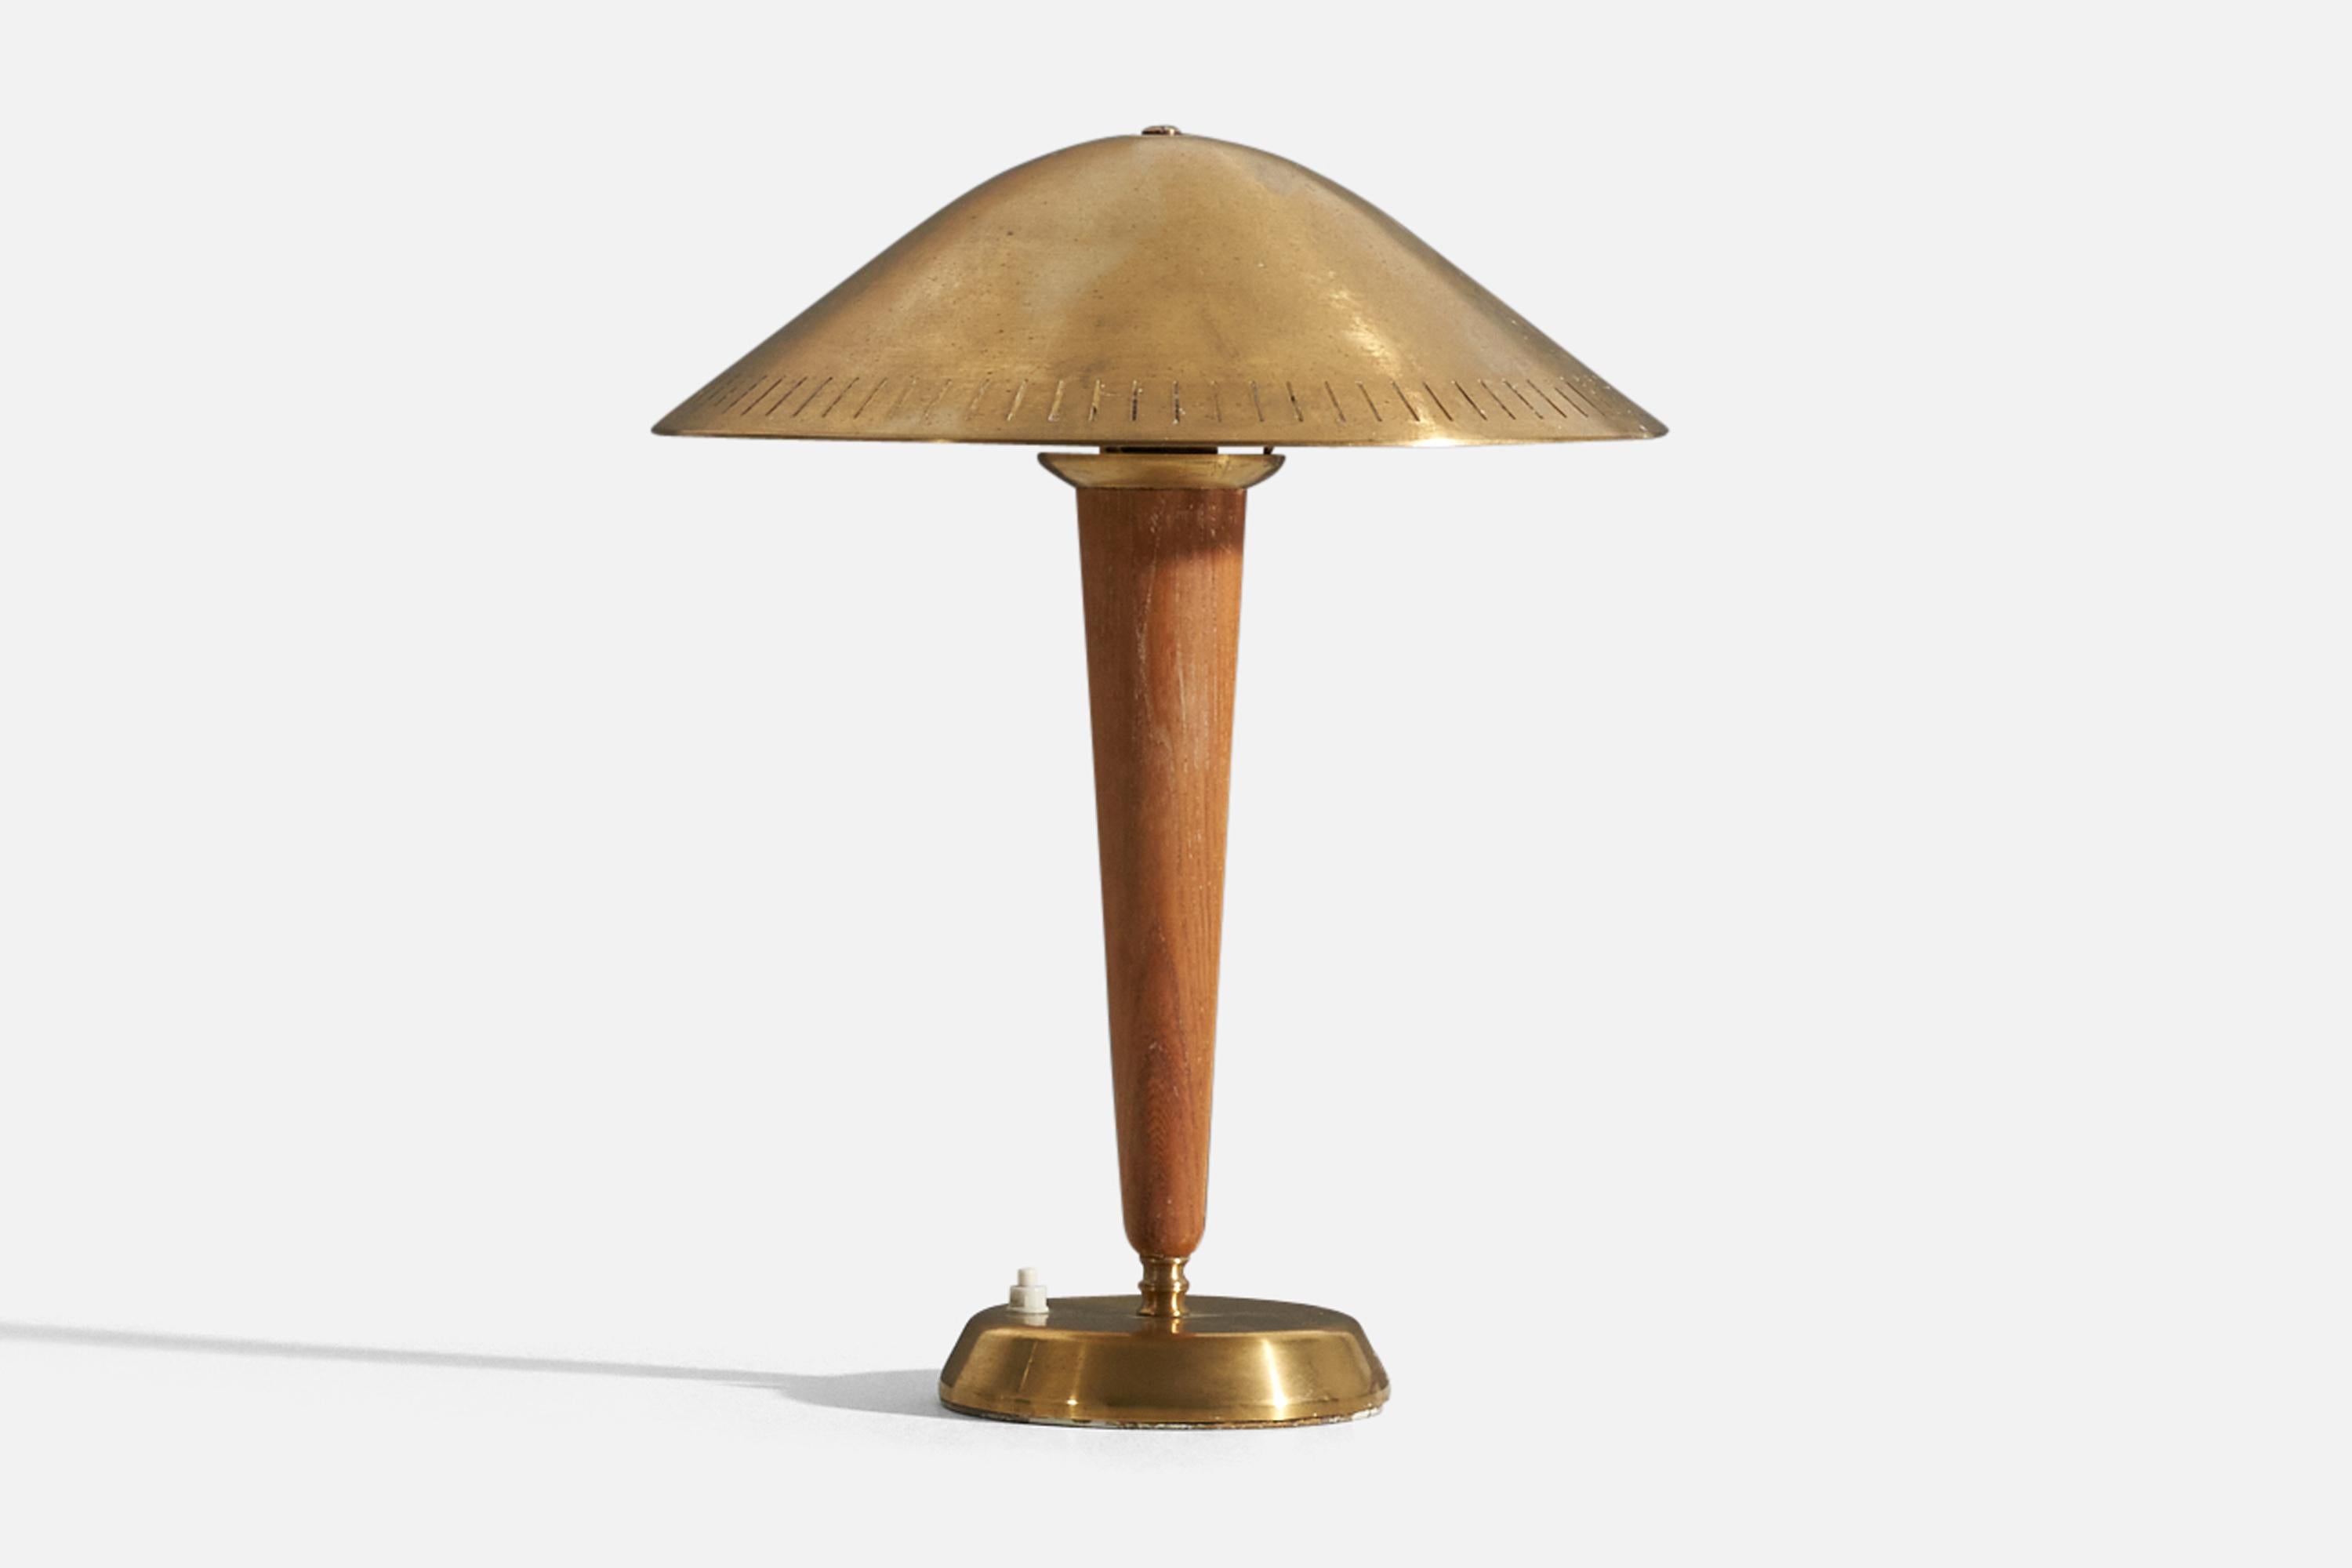 Une lampe de bureau / lampe de table moderniste. Conçu et produit par ASEA, Suède, années 1940.

Parmi les autres designers de l'époque figurent Harald Notini, Carl-Axel Acking, Paavo Tynell et Alvar Aalto.